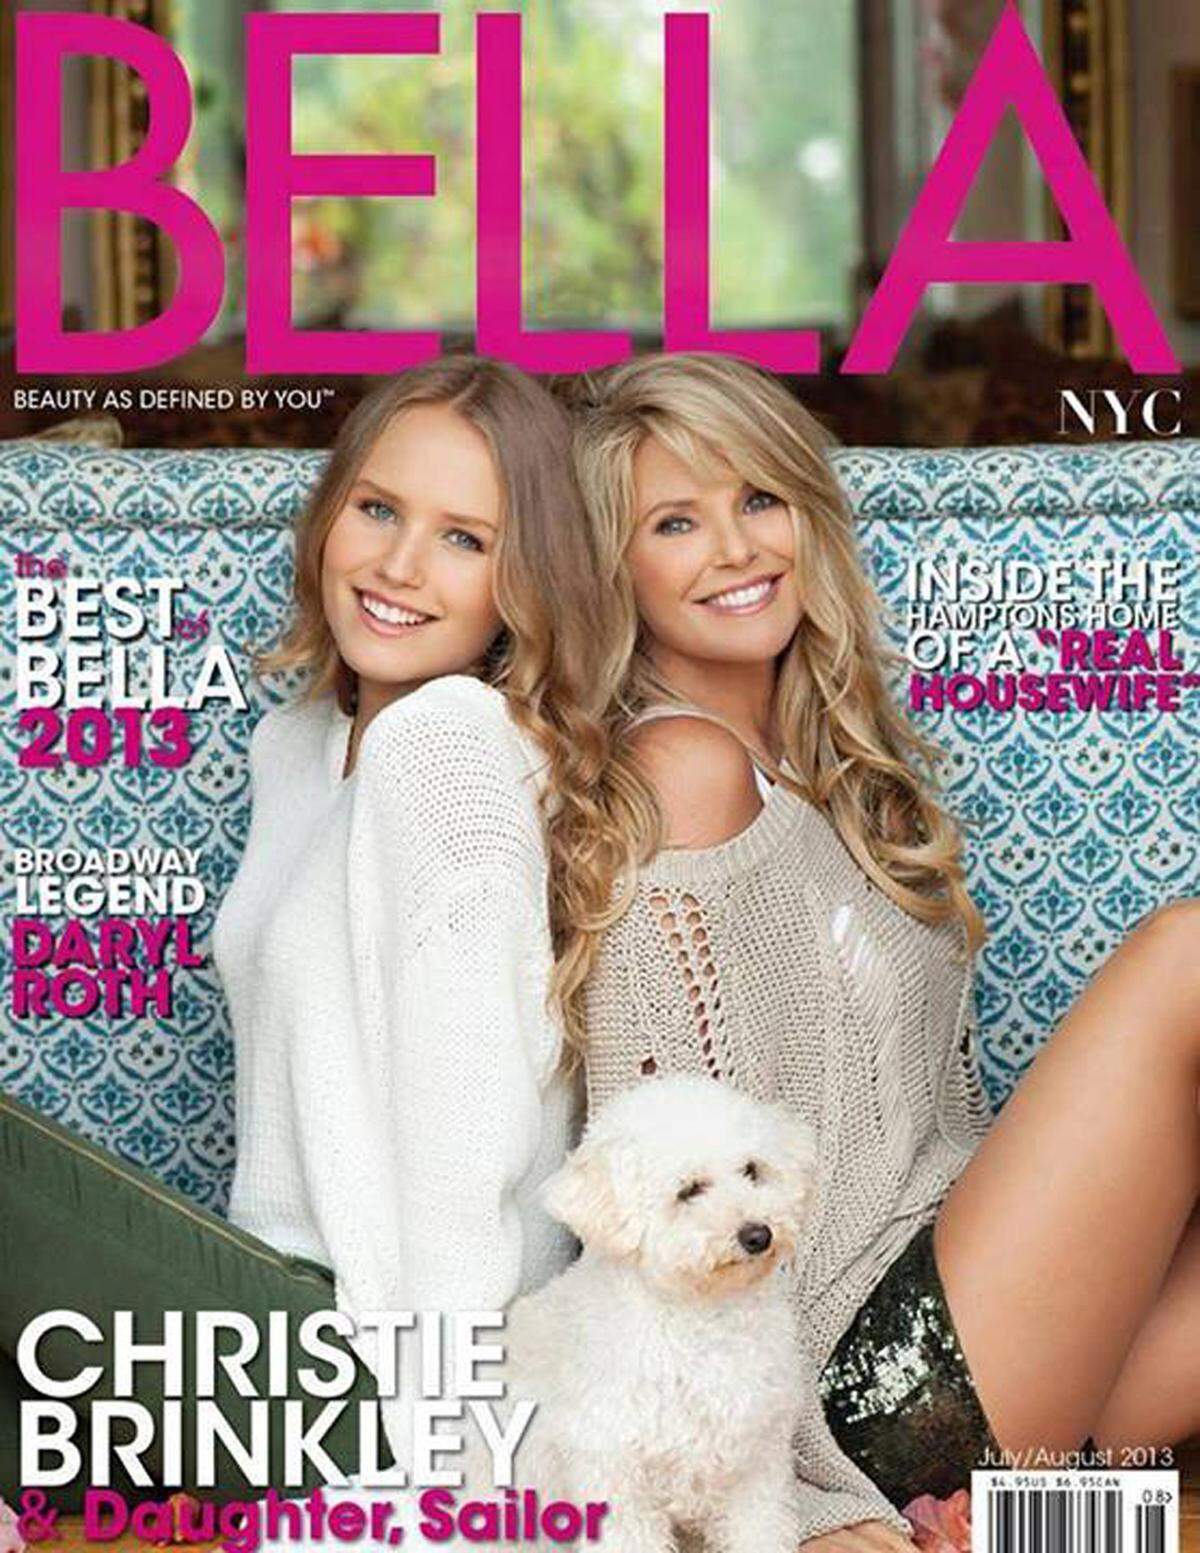 Auf dem Cover des Bella-Magazins sieht man die beiden Seite an Seite und kommt nicht umhin die starke Ähnlichkeit zu erkennen.